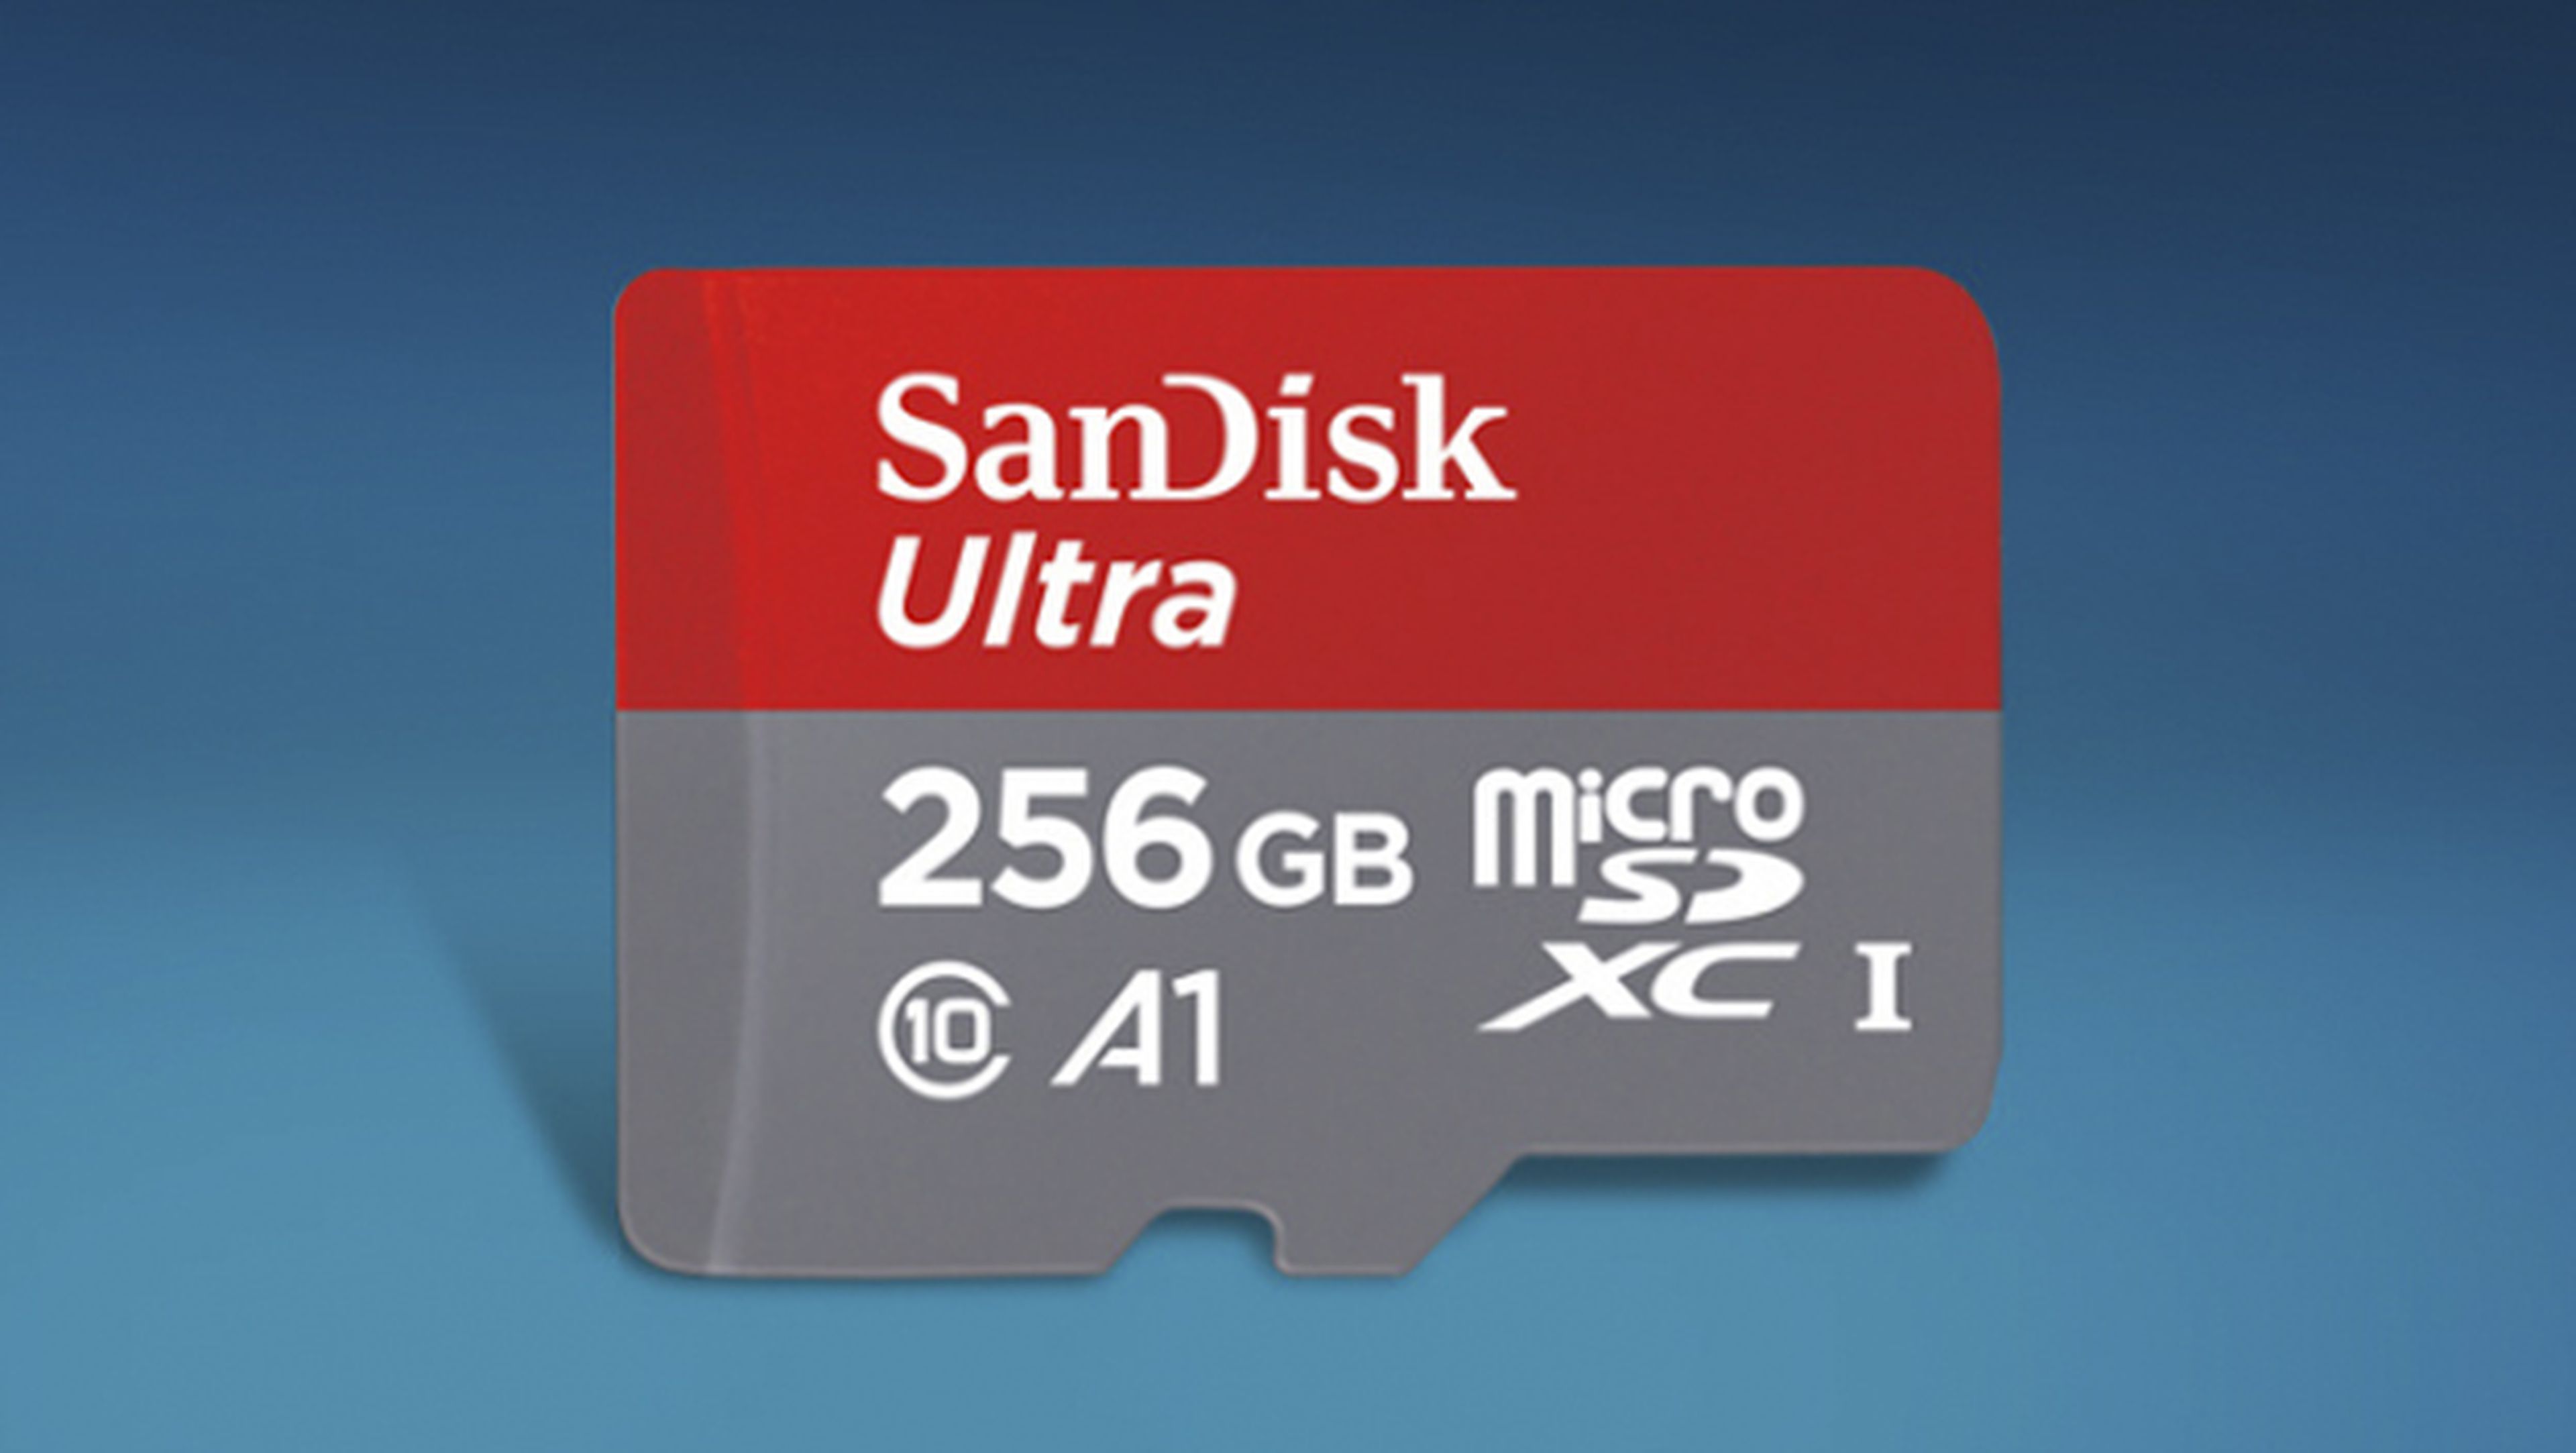 SanDisk lanza una tarjeta microSD compatible con el estándar A1